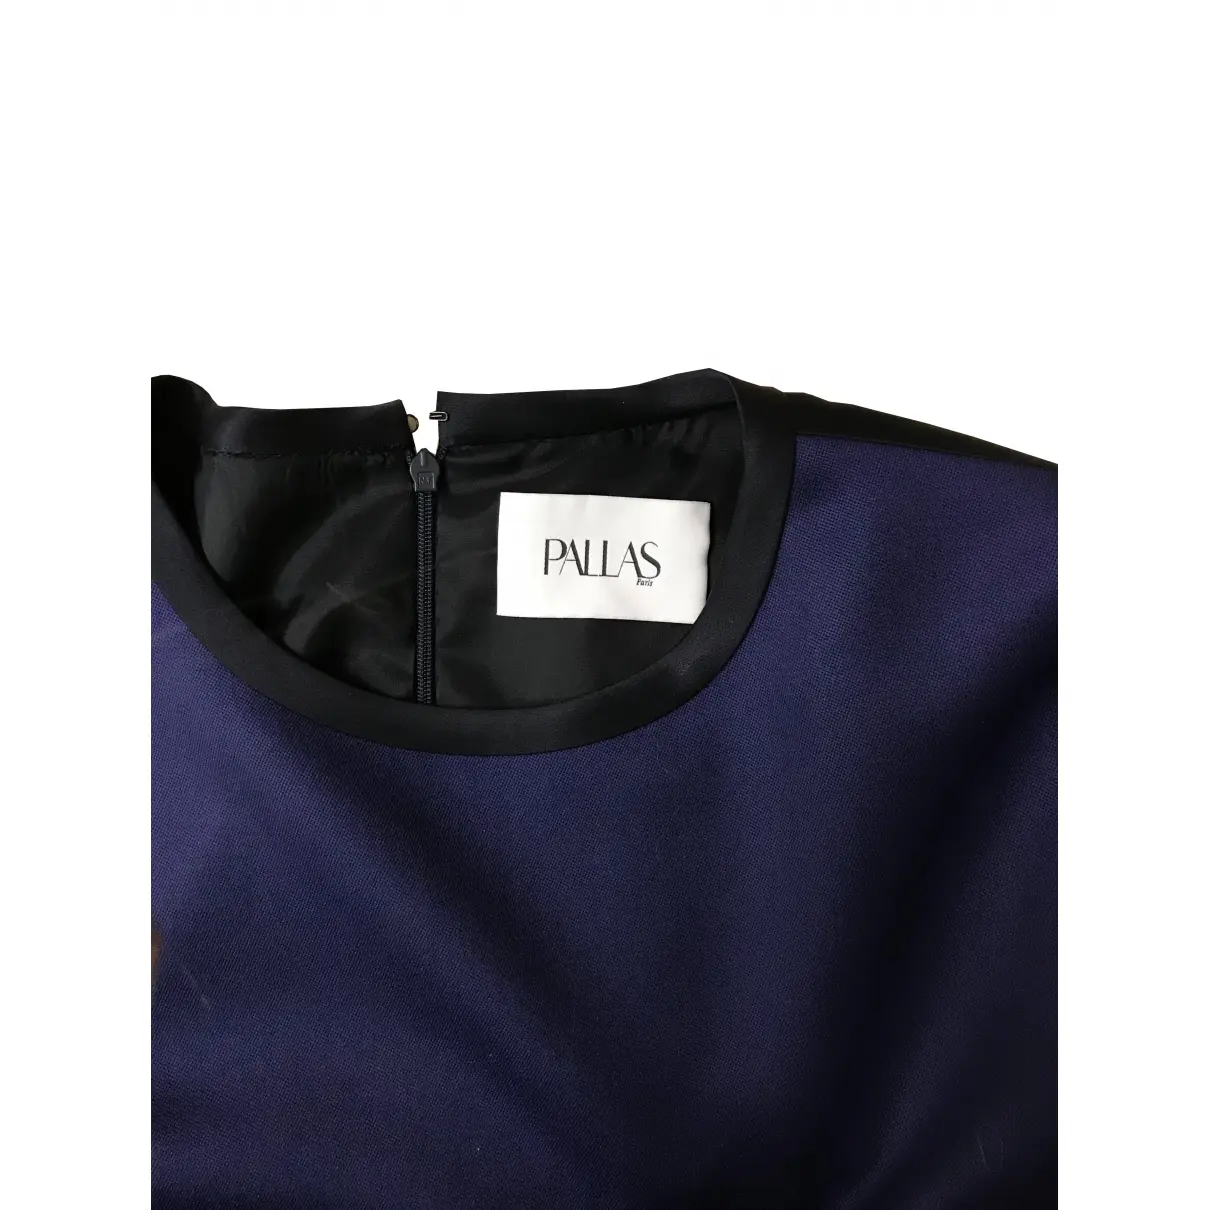 Buy Pallas Blue Cotton Top online